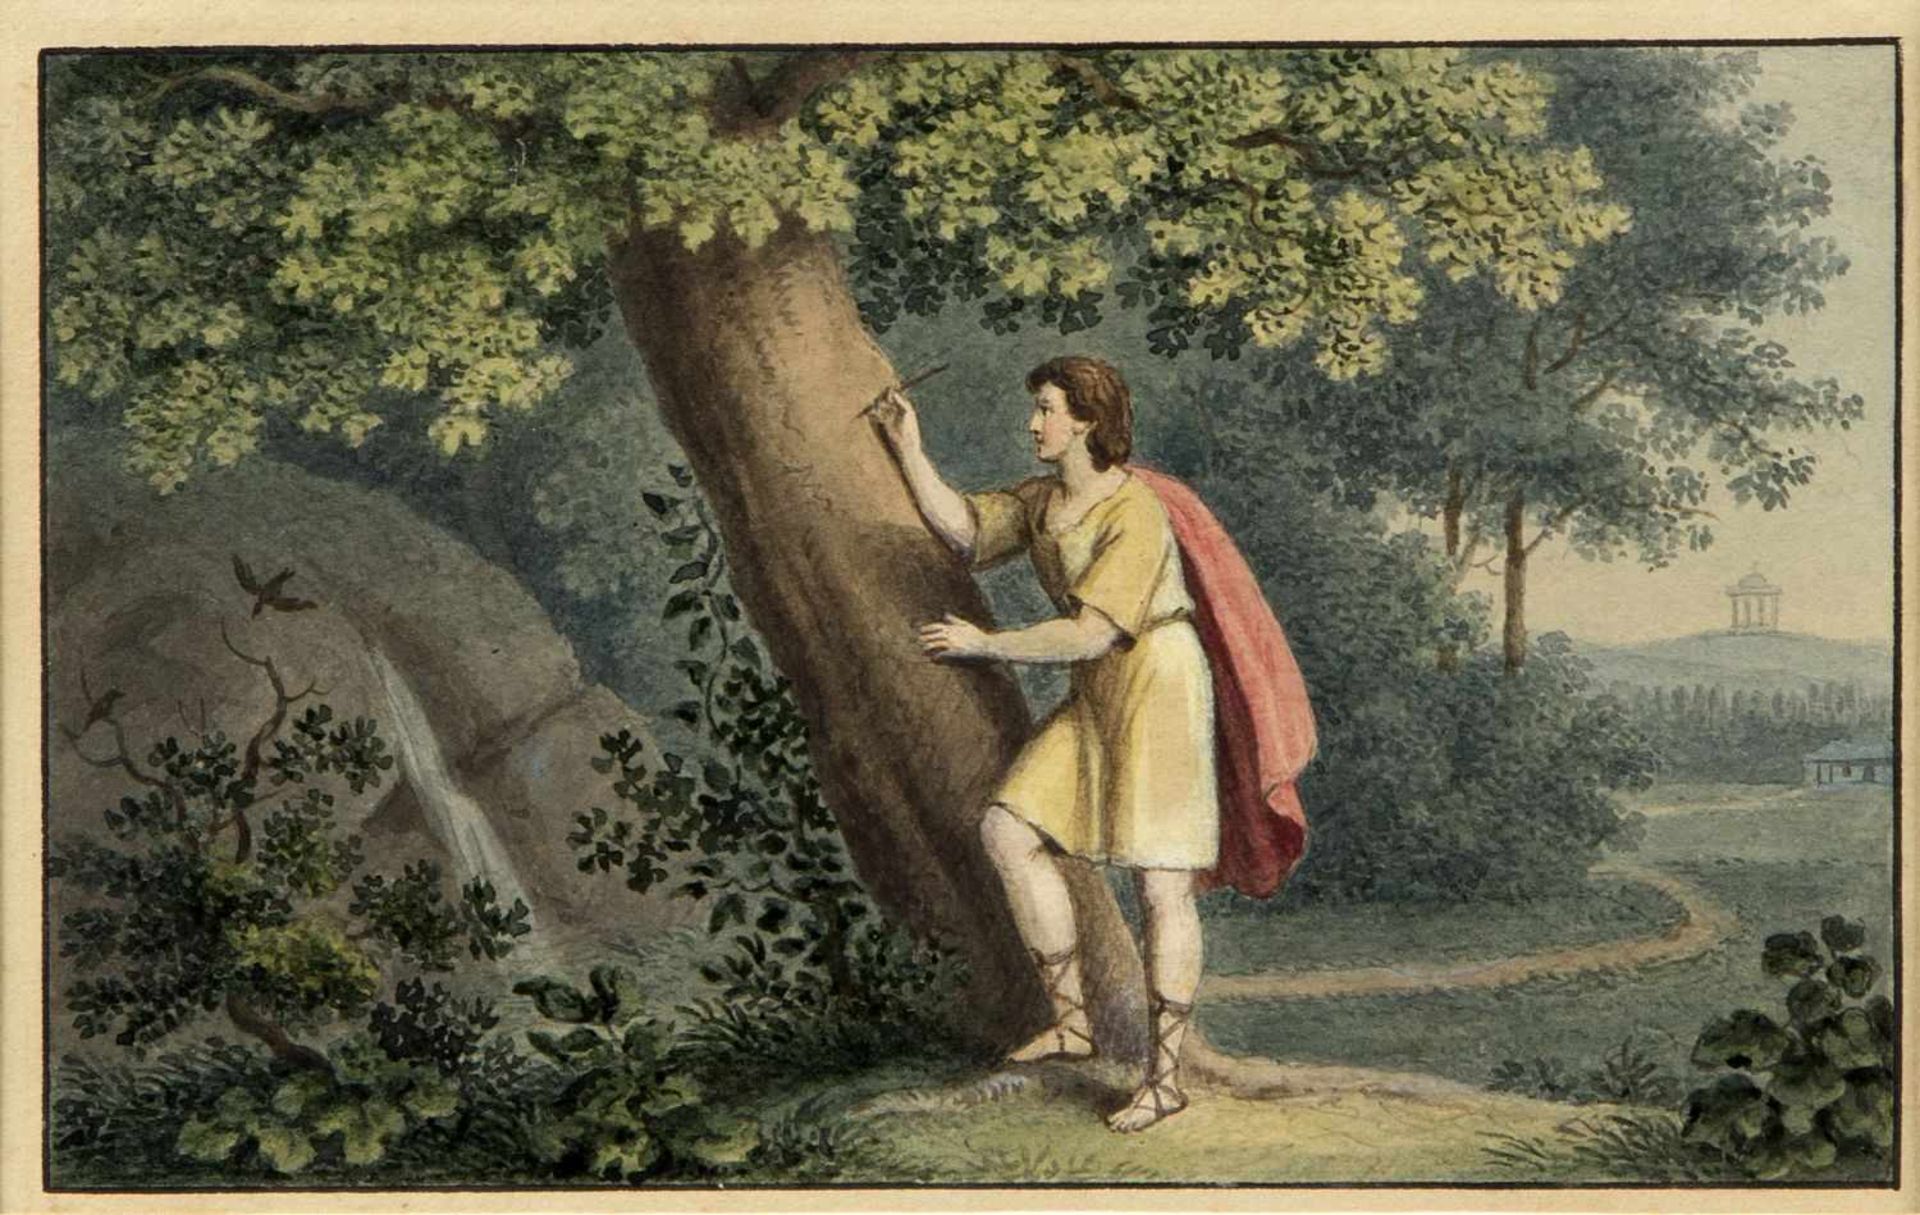 Schurig, Karl Wilhelm. 1818 Leipzig - Dresden 1874. Zugeschrieben Jüngling ritzt in einen Baum.